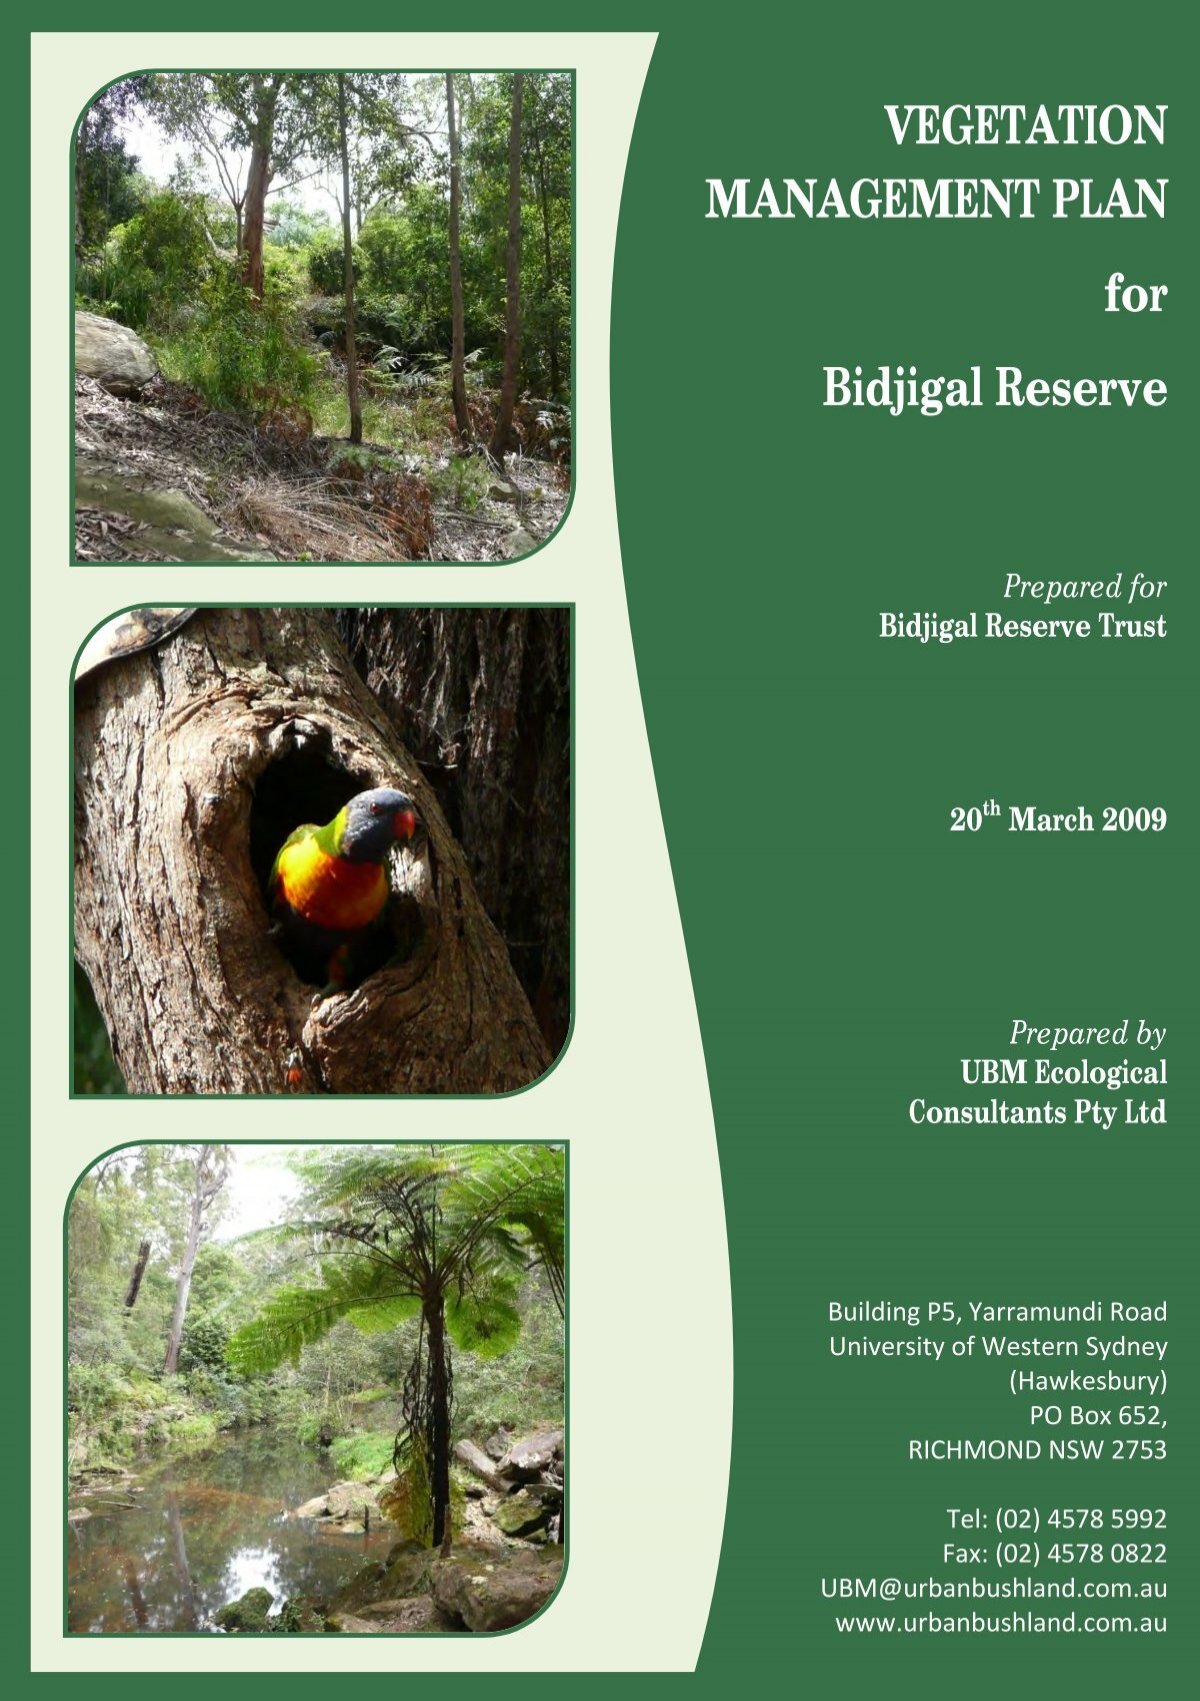 VEGETATION MANAGEMENT PLAN for Bidjigal Reserve - Land